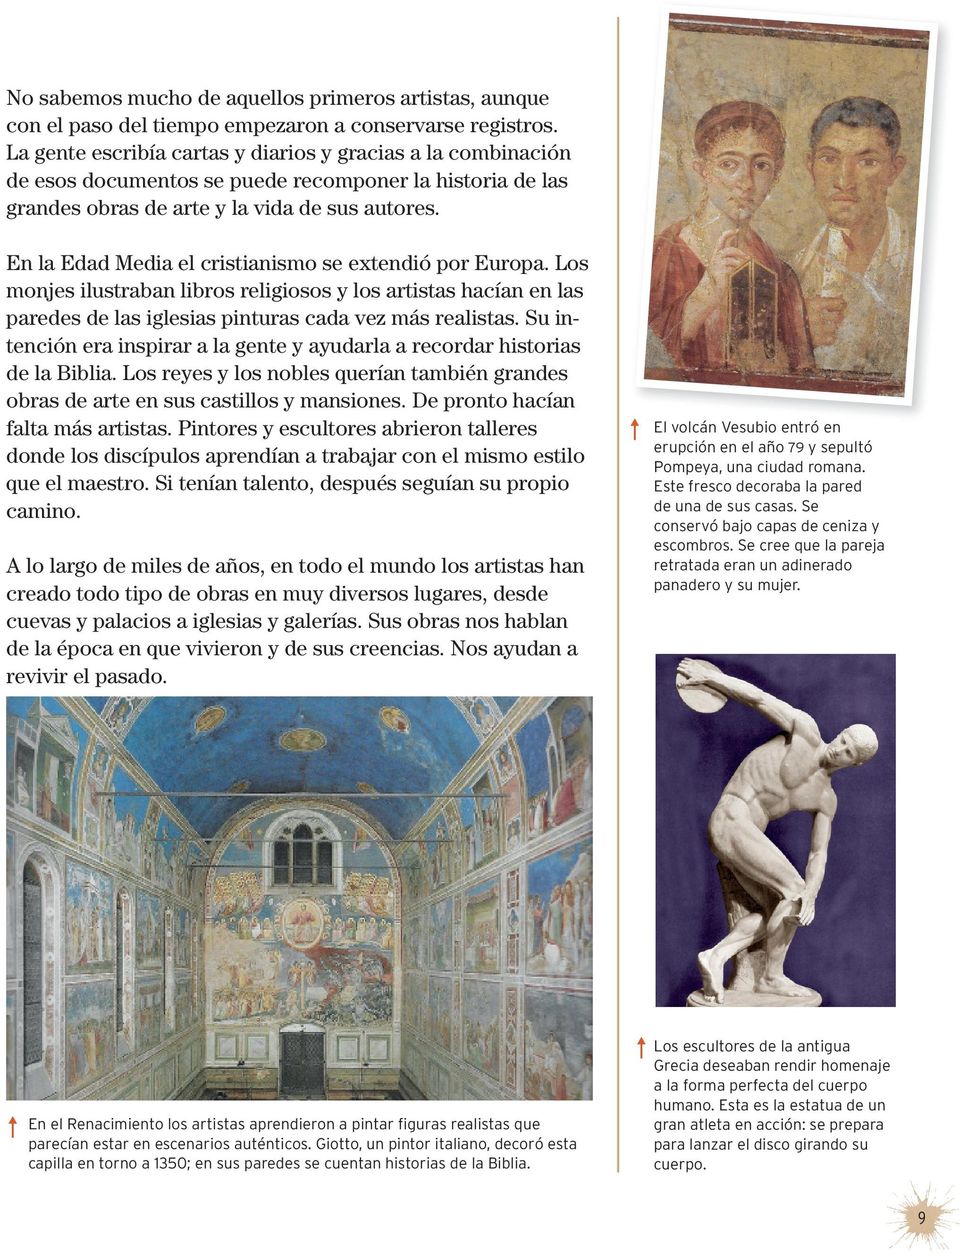 En la Edad Media el cristianismo se extendió por Europa. Los monjes ilustraban libros religiosos y los artistas hacían en las paredes de las iglesias pinturas cada vez más realistas.